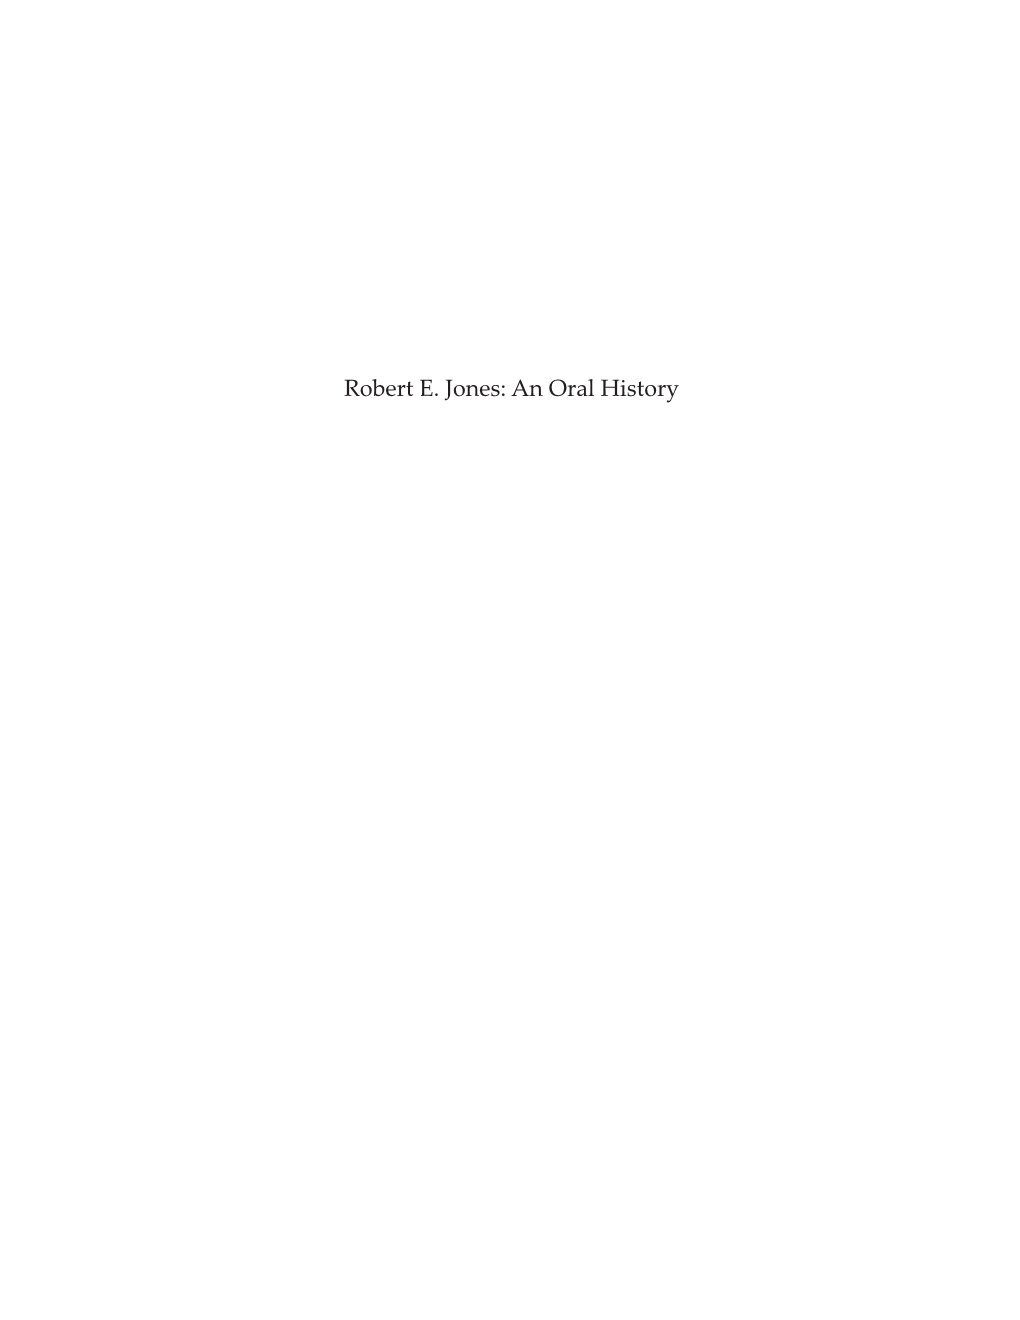 Robert E. Jones: an Oral History